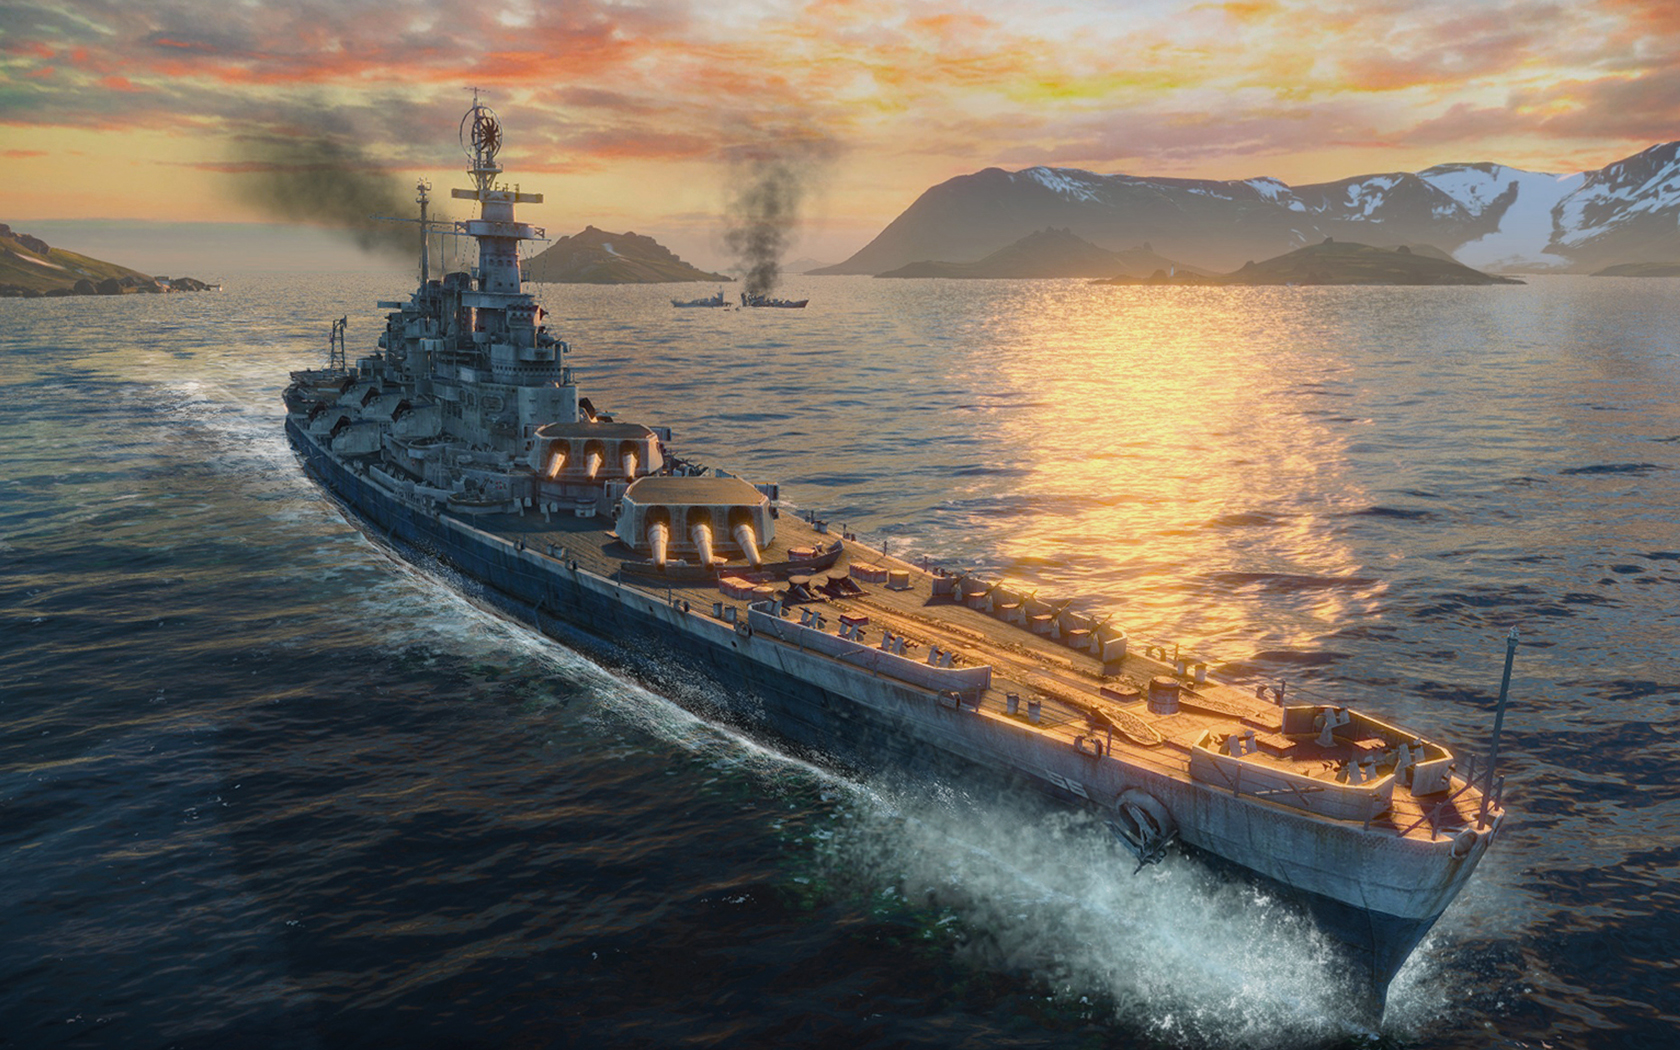 画像集no 021 Gamescom 戦艦 長門 の主砲が火を噴き 駆逐艦 吹雪 が縦横無尽に航行 World Of Warships のデモプレイで新情報が次々と明らかに